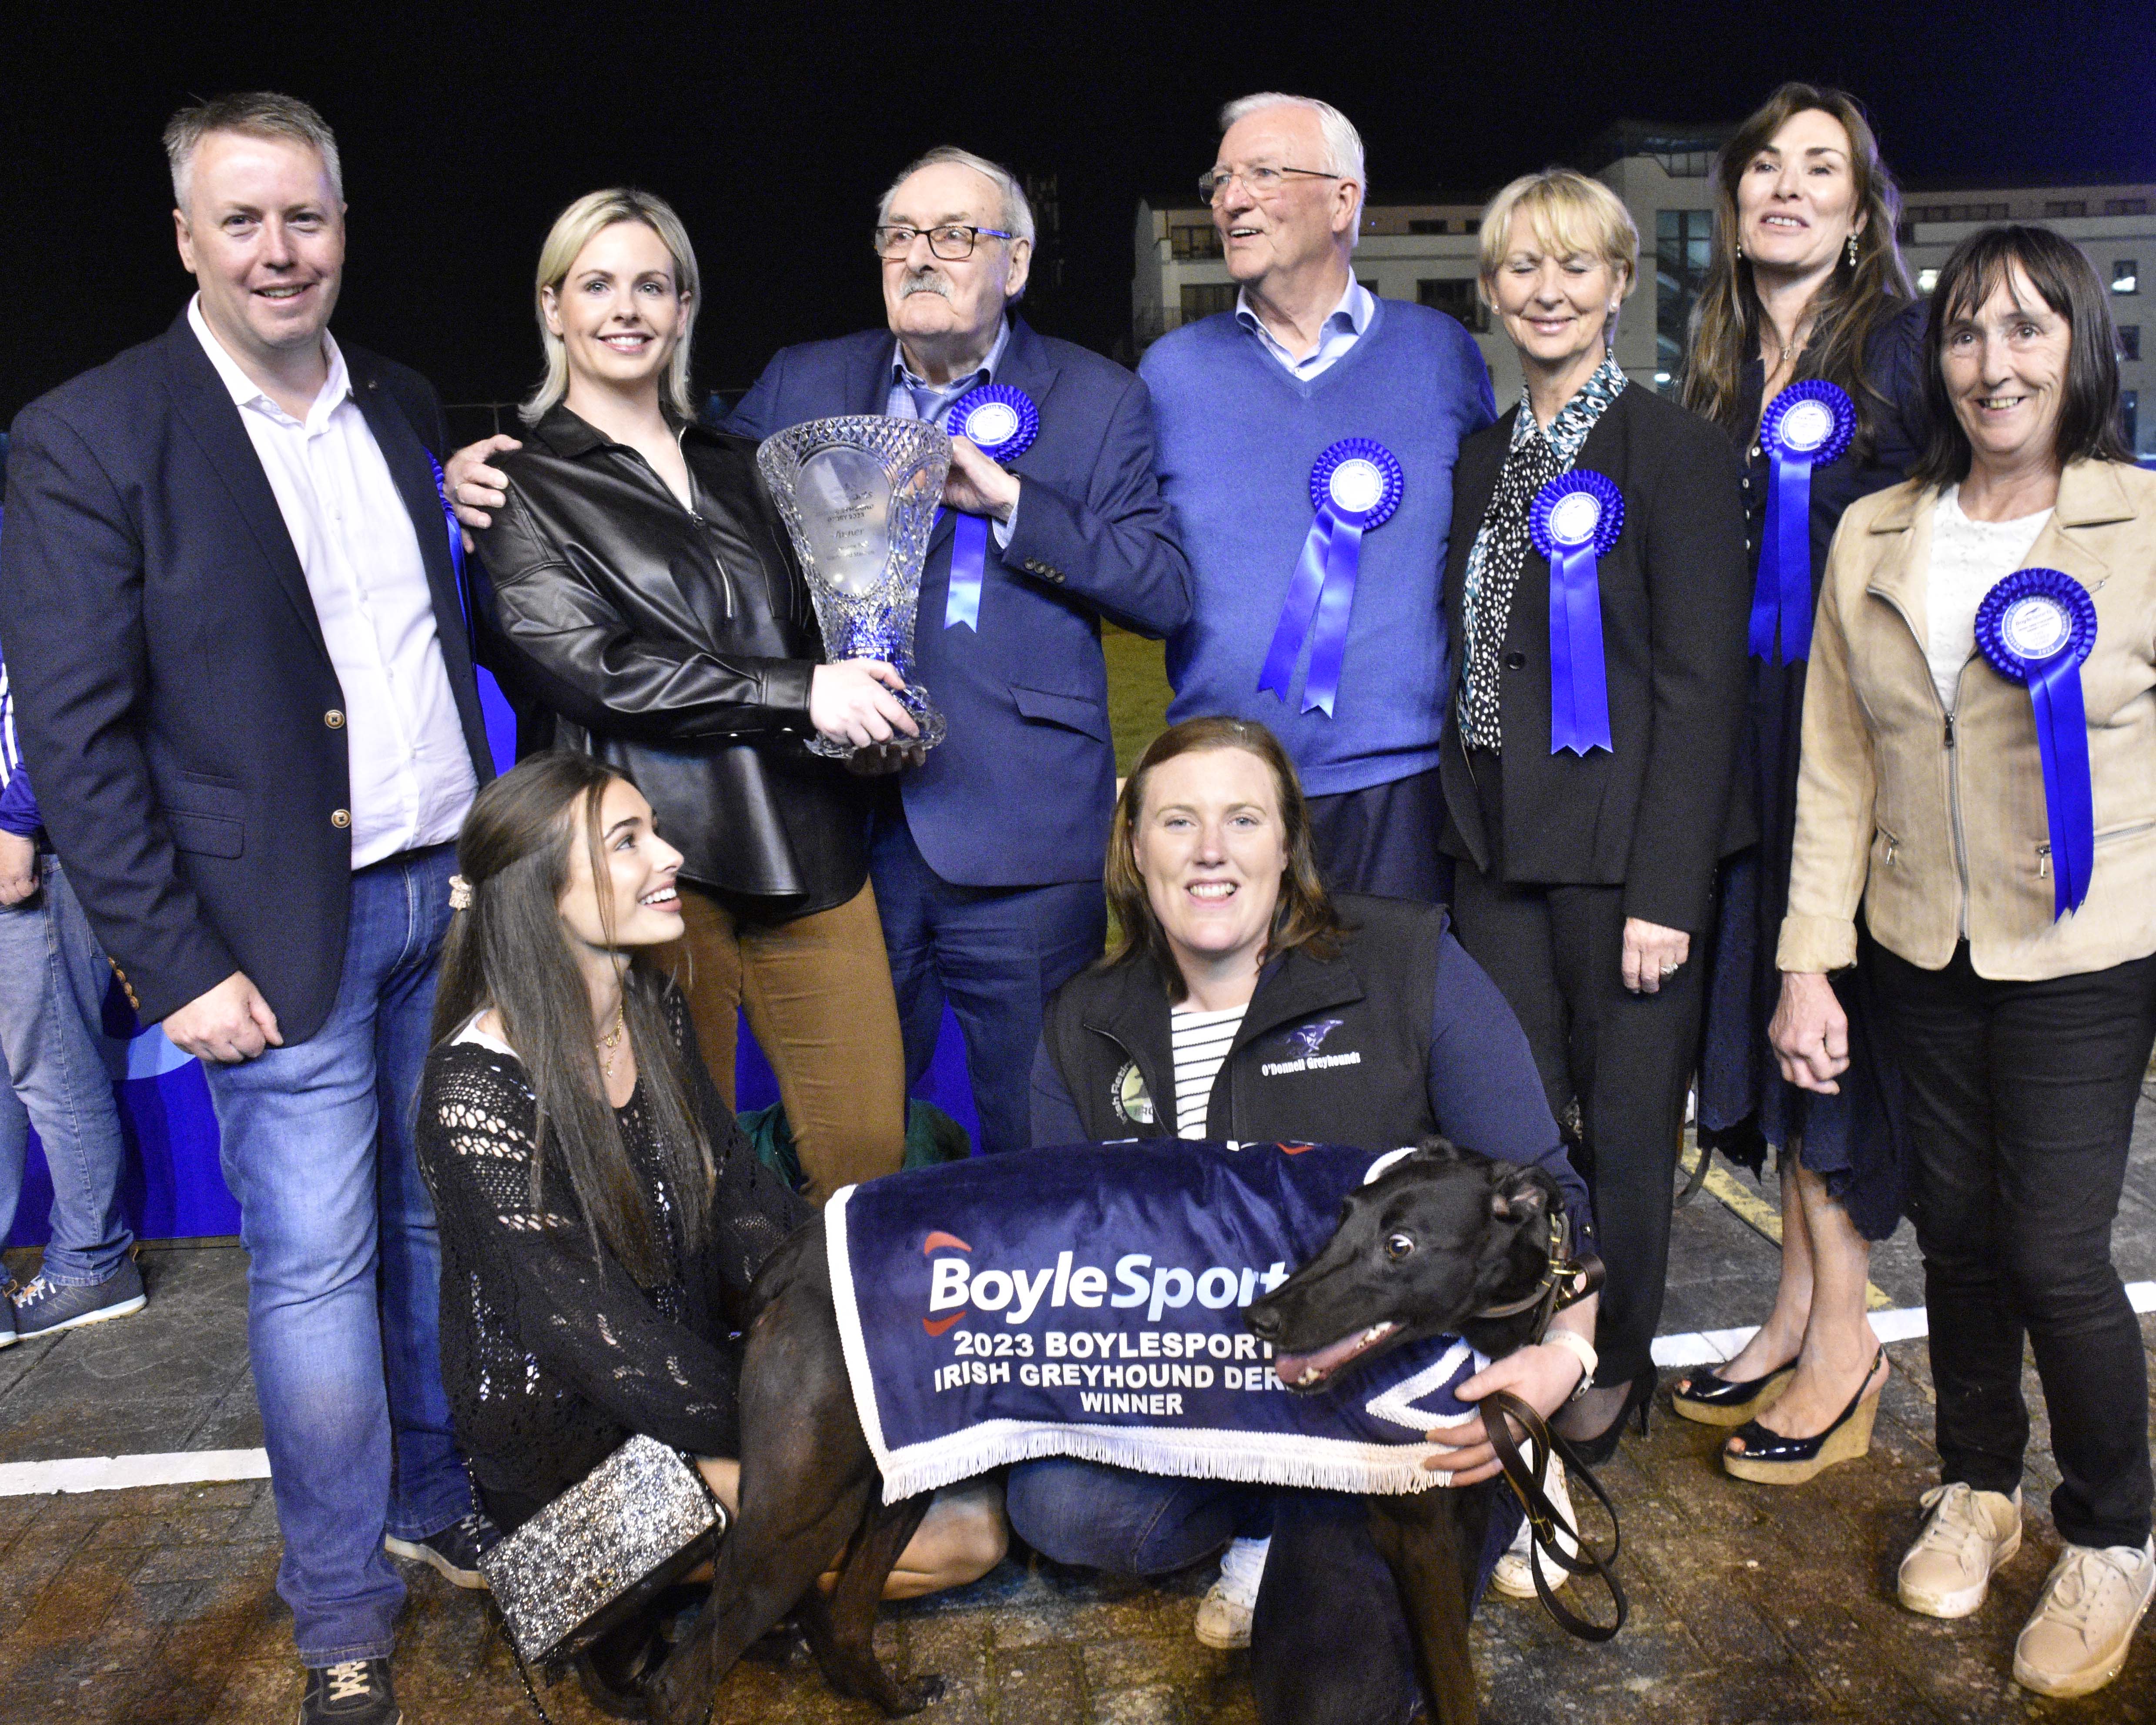 The 2023 Boylesports Irish Greyhound Derby Champion - The Other Kobe 🏆